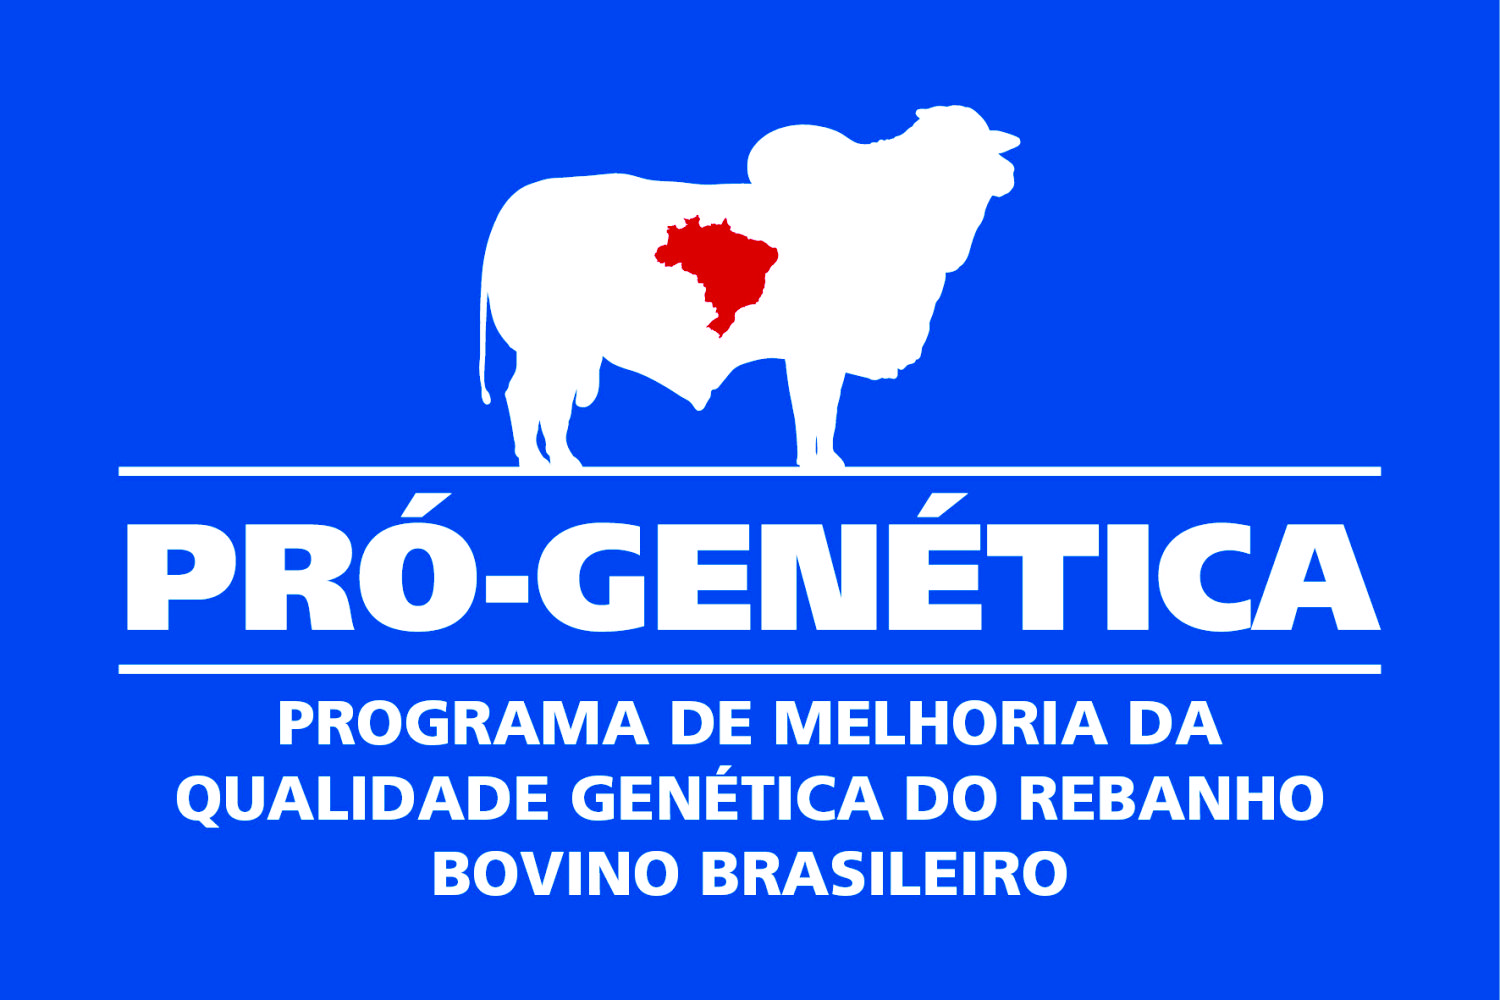 Pro-Genetica